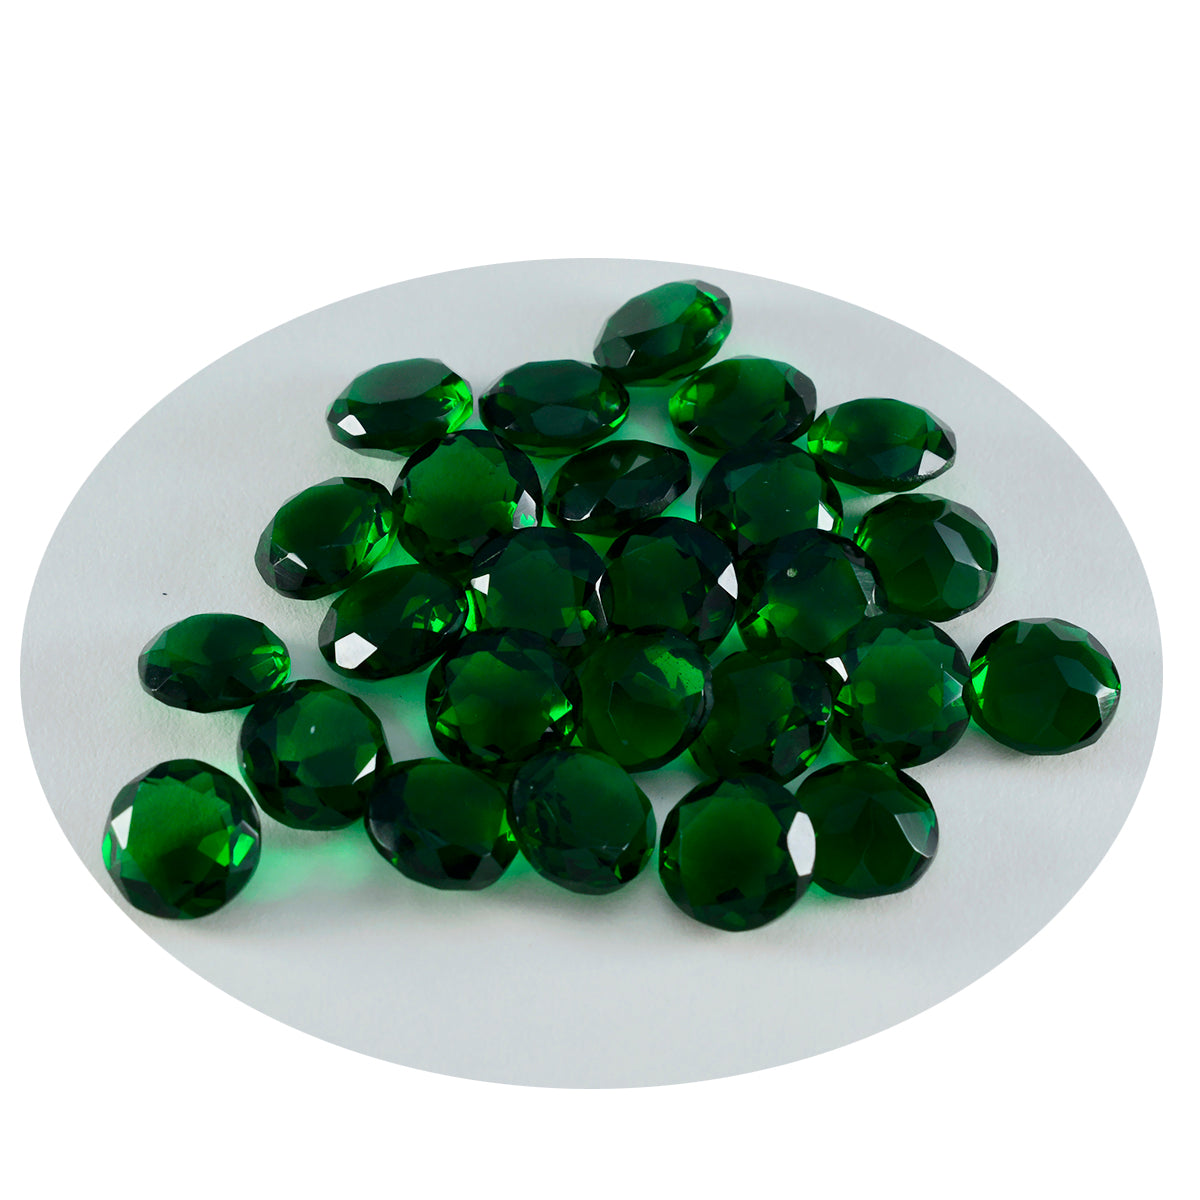 Riyogems 1 Stück grüner Smaragd mit CZ, facettiert, 4 x 4 mm, runde Form, Edelstein von erstaunlicher Qualität